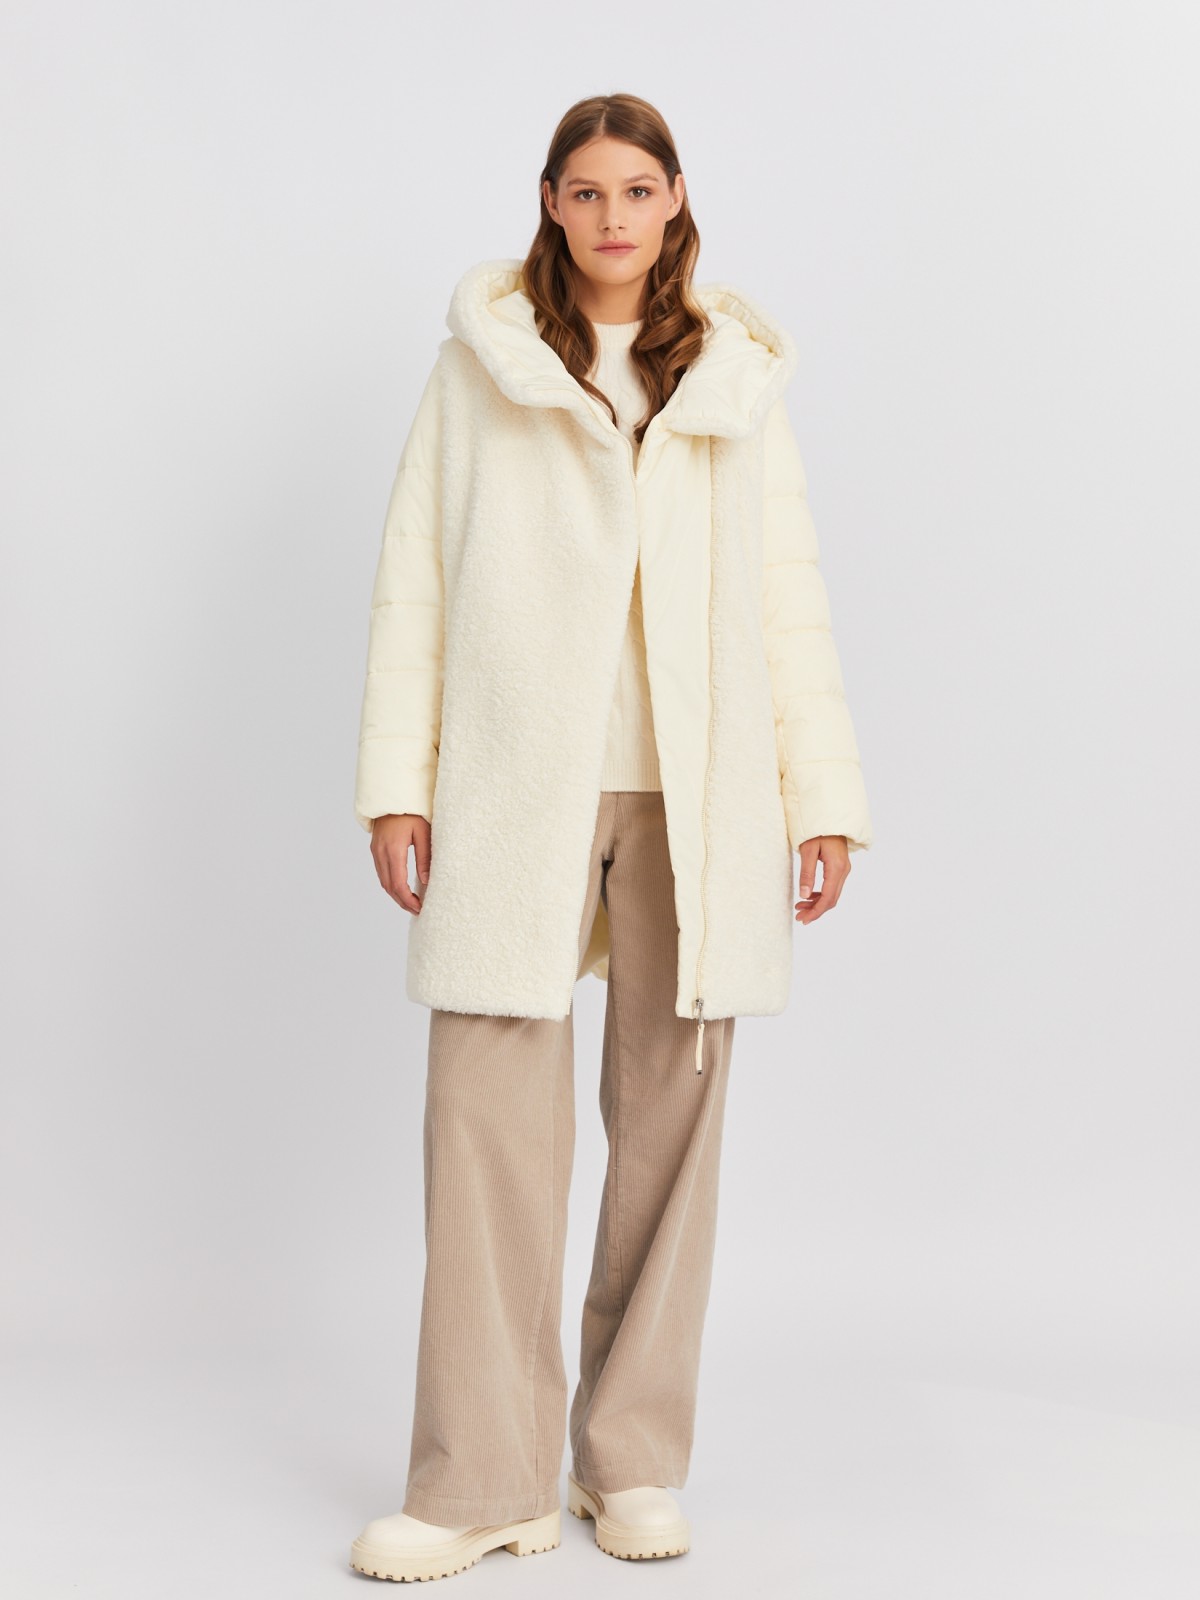 Тёплая куртка-пальто с капюшоном и отделкой из экомеха zolla 022425212164, цвет молоко, размер L - фото 2